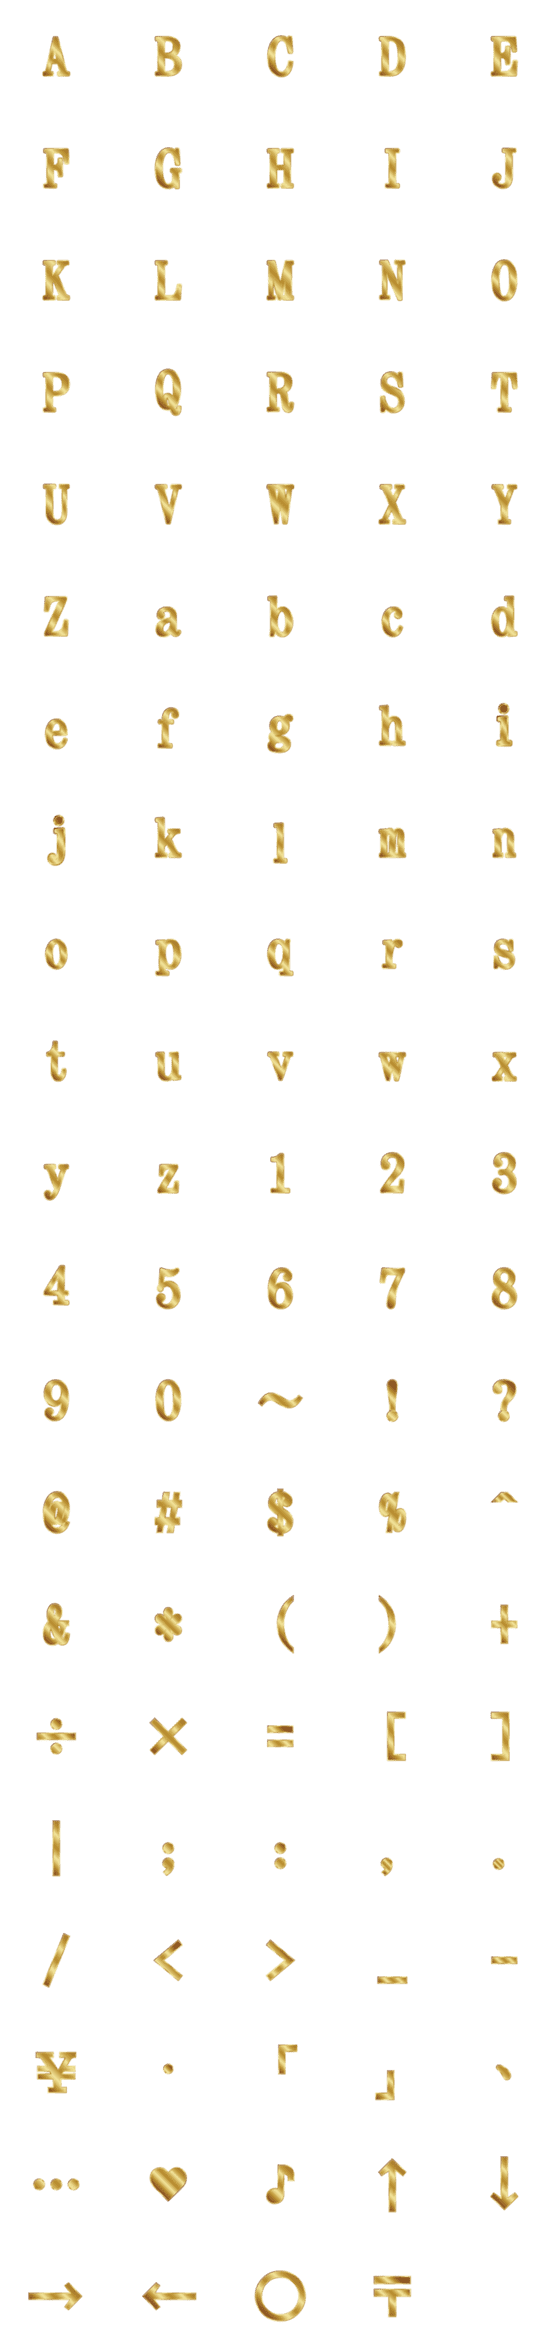 [LINE絵文字]英語のアルファベットの黄金伝説の画像一覧